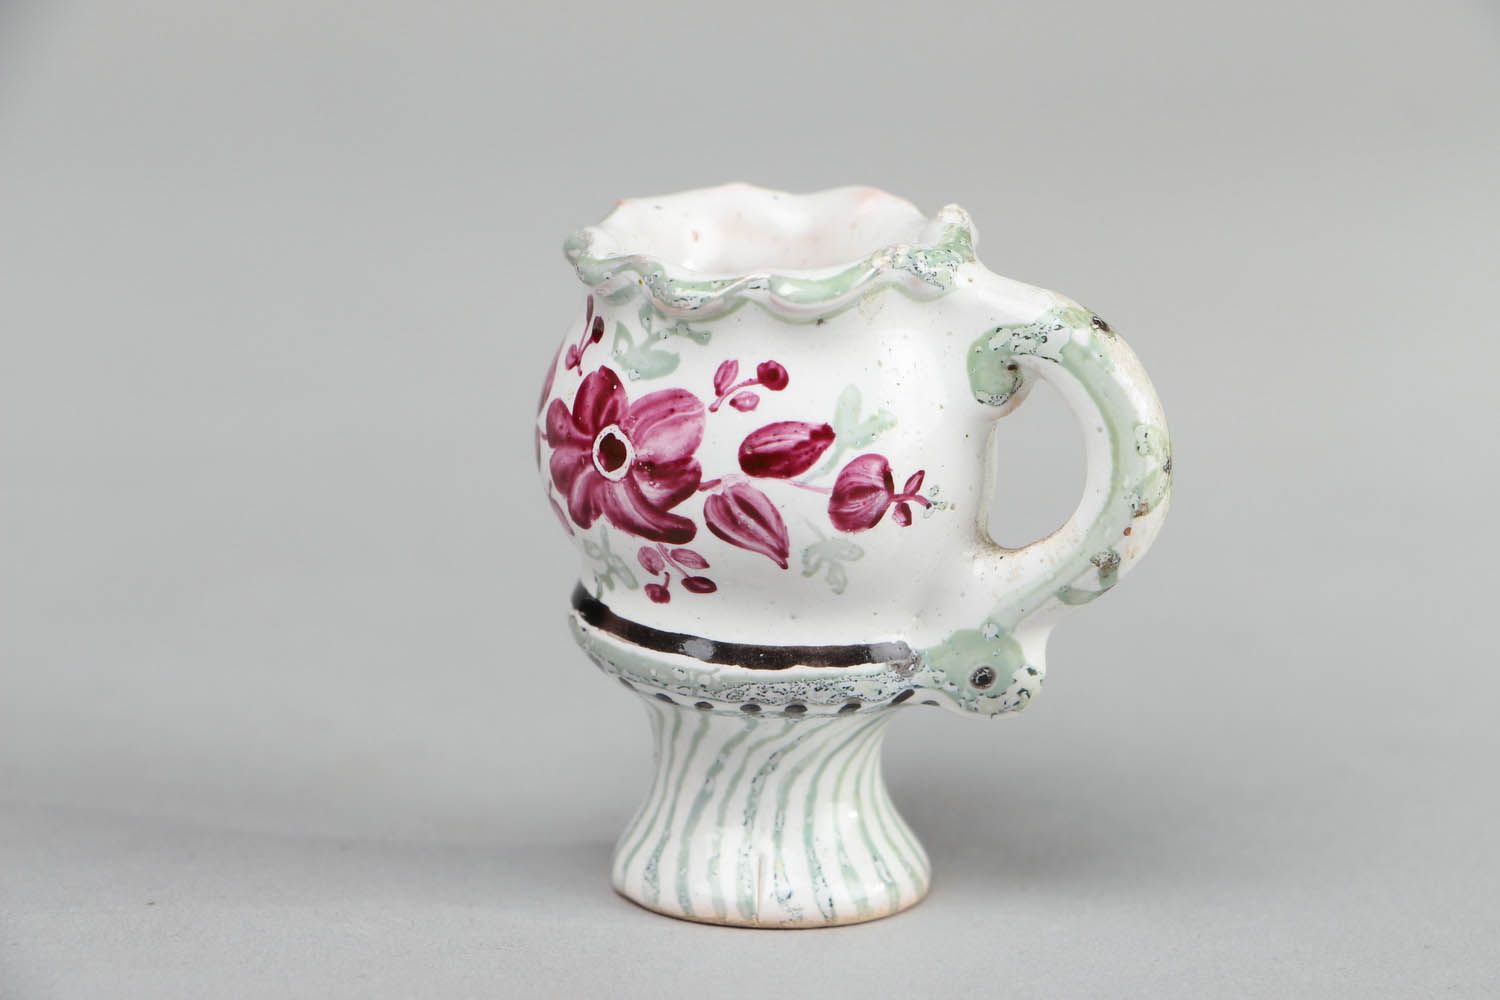 Little 2 inches ceramic floral design porcelain décor vase 0,07 lb photo 1